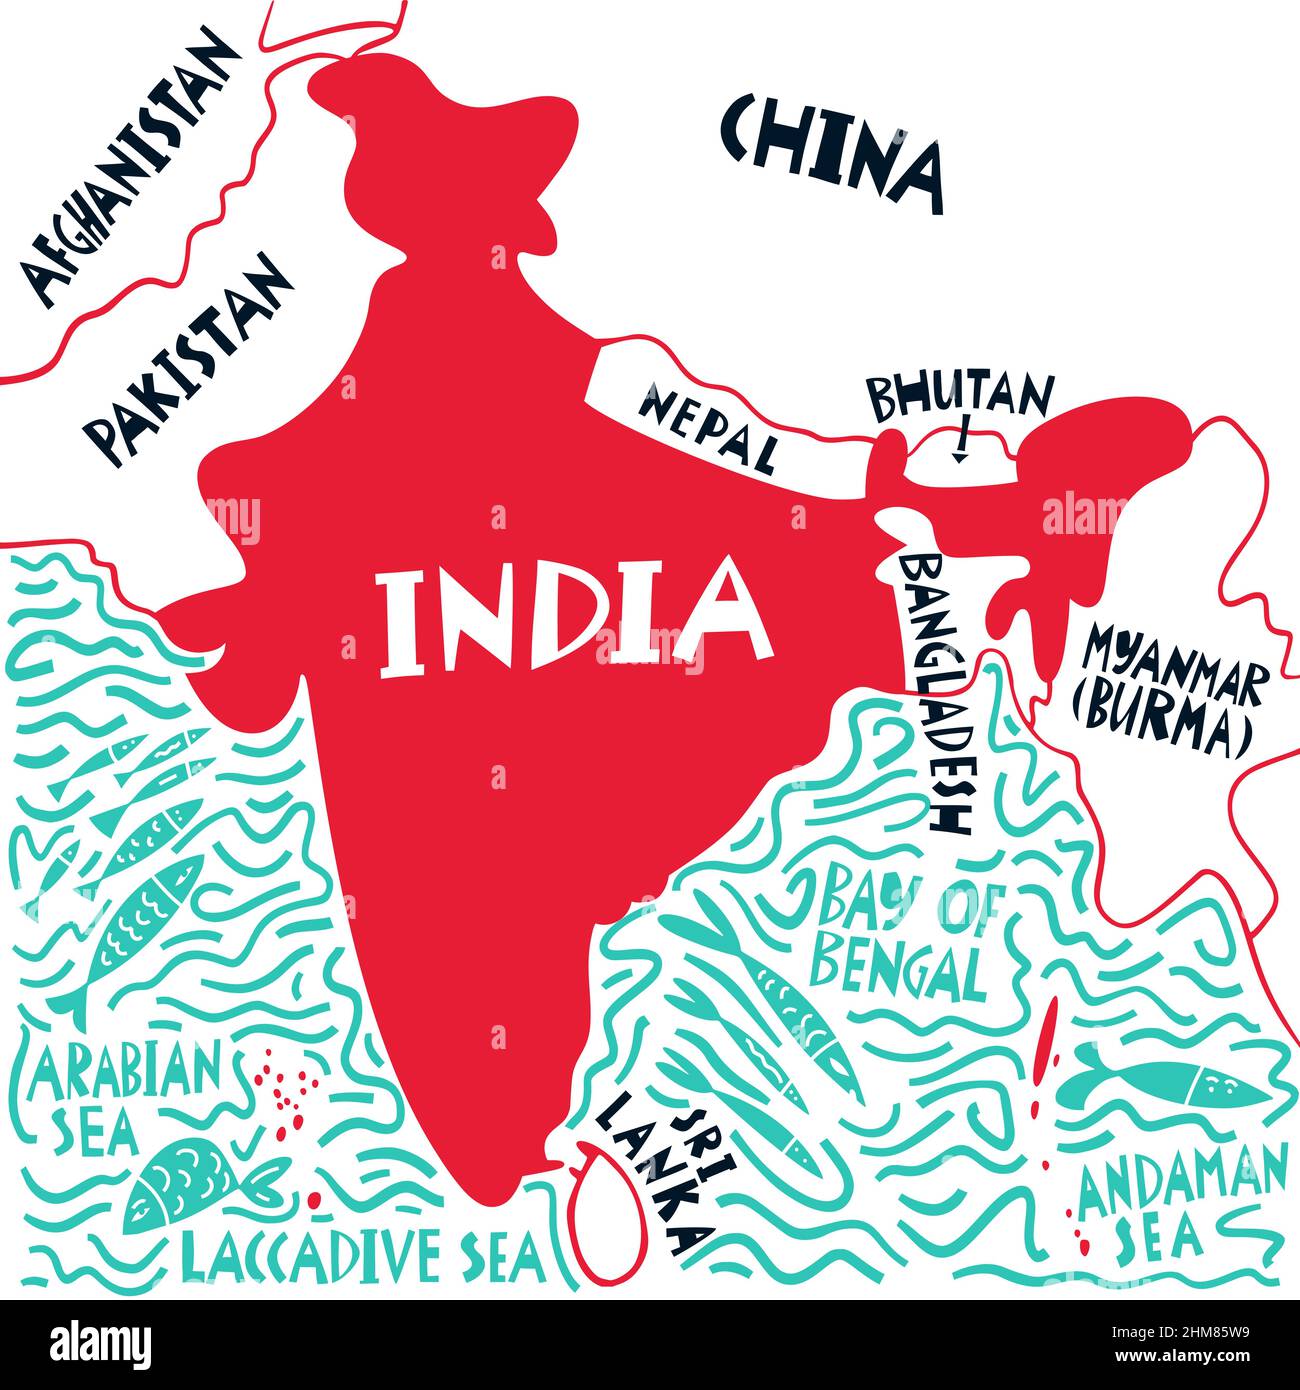 Vektor Hand gezeichnete stilisierte Karte der indischen Nachbarn Länder und Gewässer. Reiseabbildung. Darstellung der Geographie der Republik Indien. Asien Karte eleme Stock Vektor